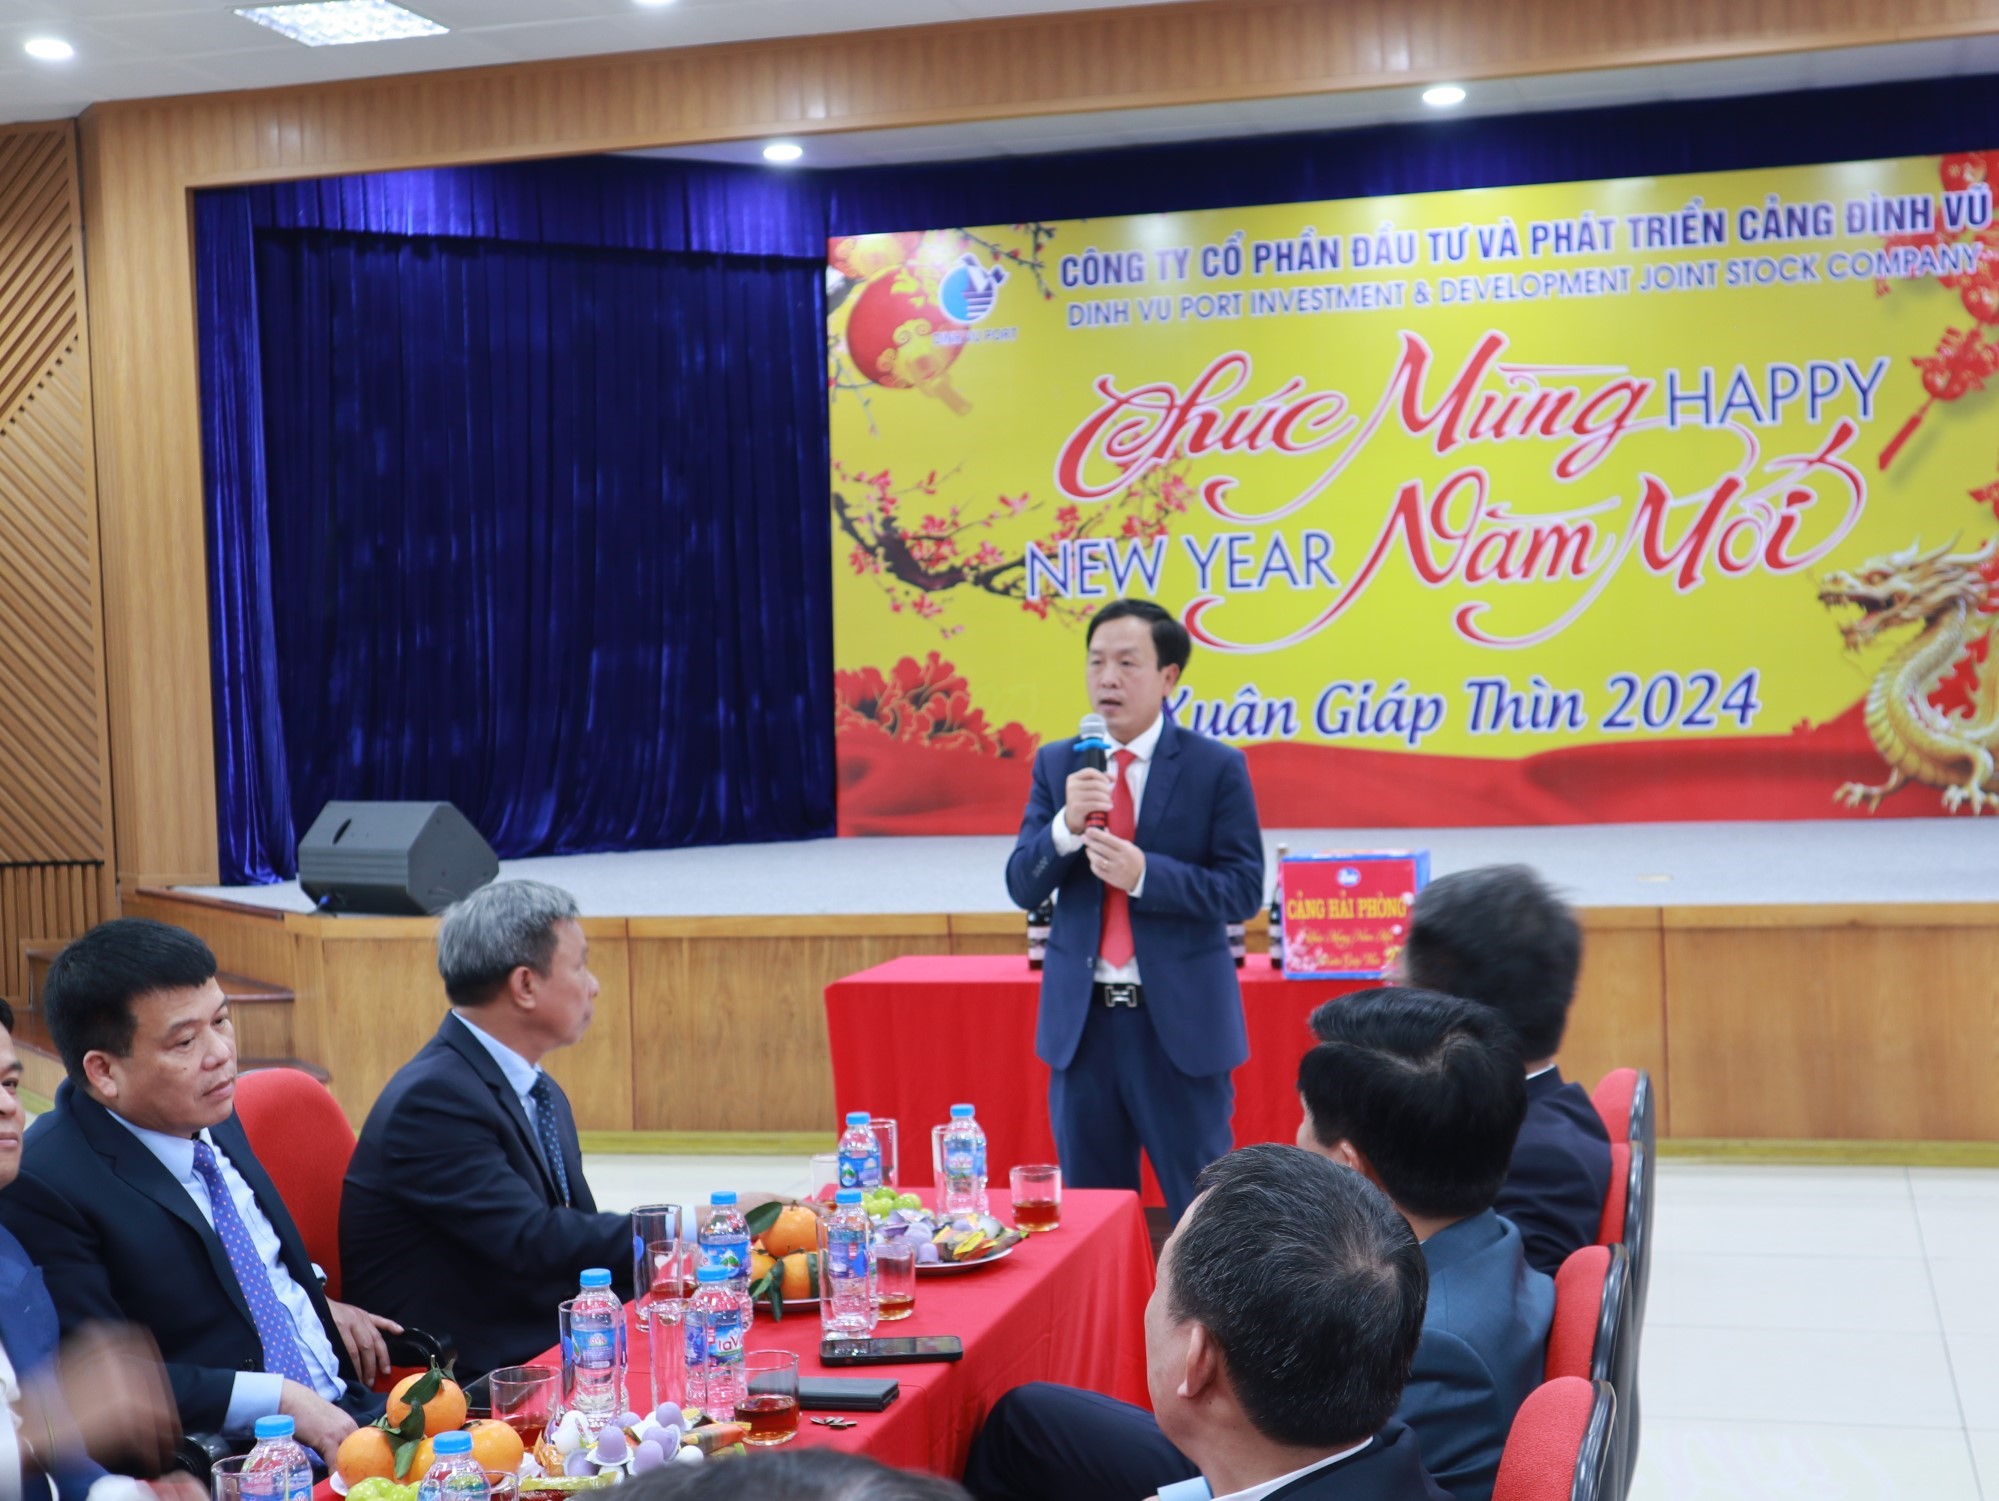 Ông Phạm Hồng Minh - Bí thư Đảng ủy, Chủ tịch HĐQT Cảng Hải Phòng phát biểu chúc mừng tại Hội nghị